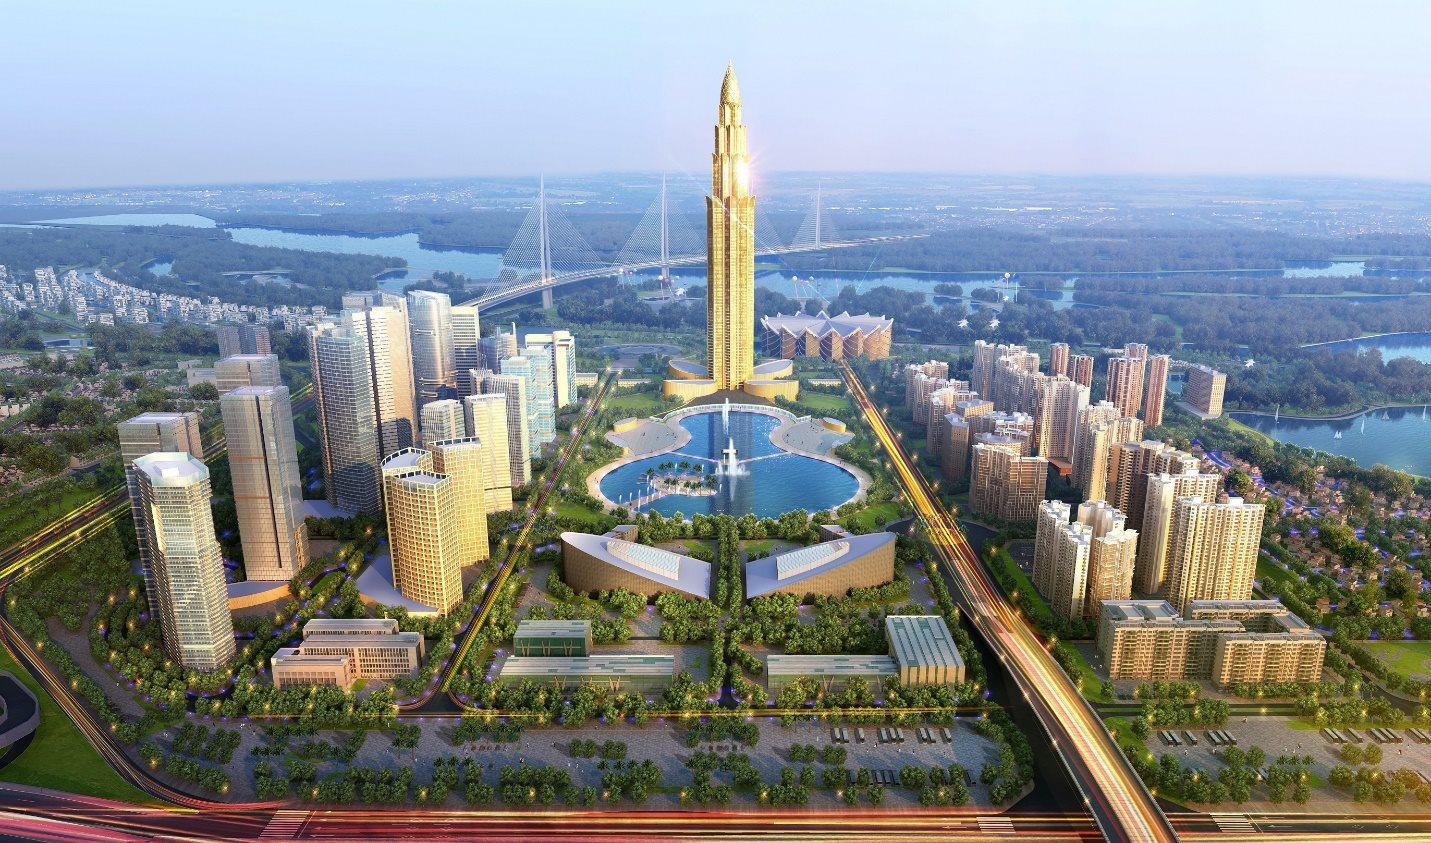 Cận cảnh khu đất chuẩn bị xây tháp tài chính 108 tầng cao nhất Việt Nam - 2